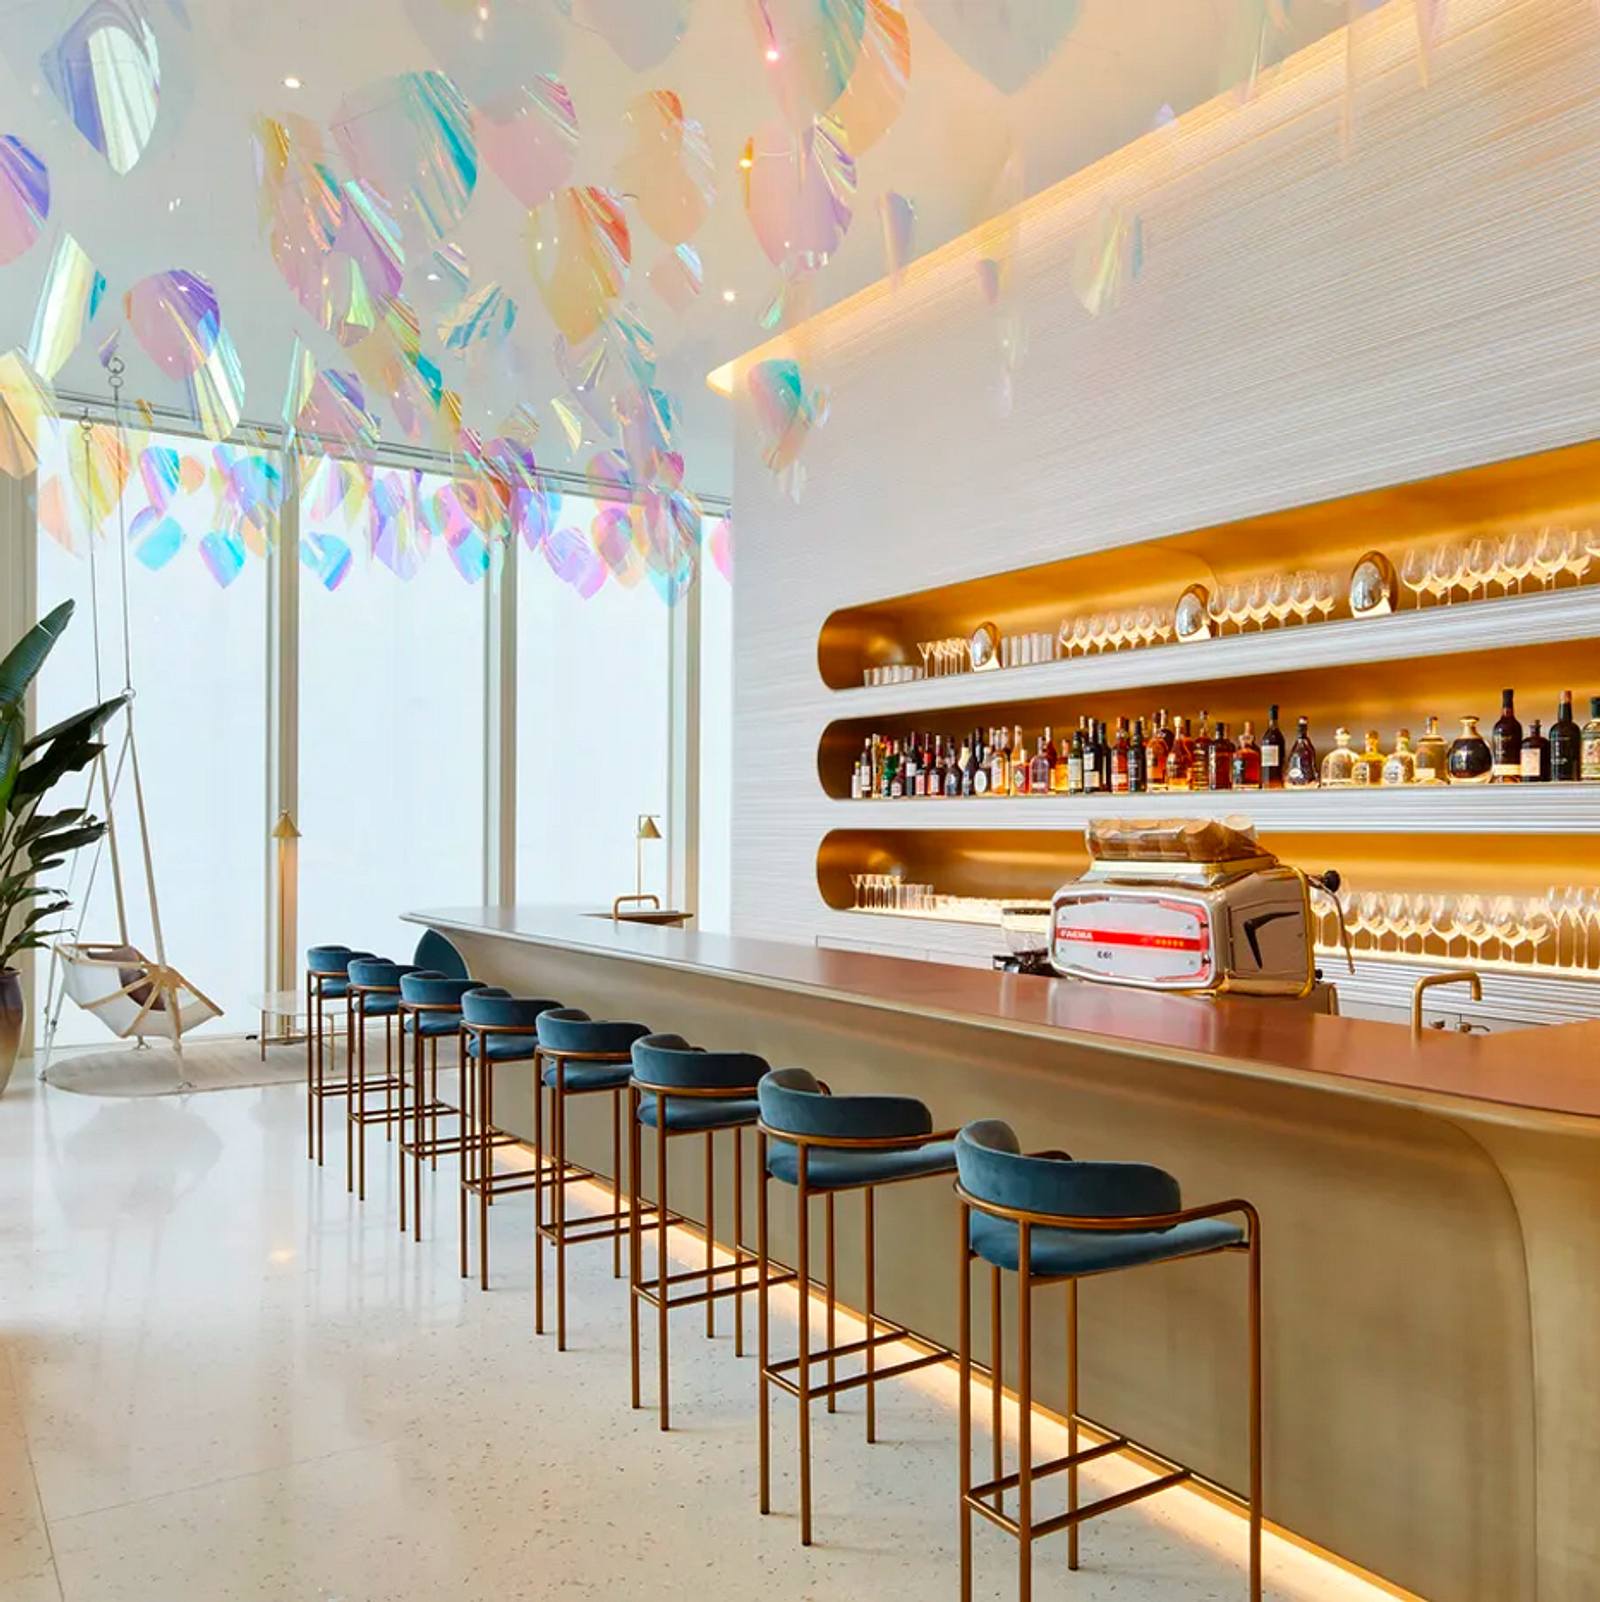 Louis Vuitton: So sieht das erste Restaurant der Nobelmarke aus